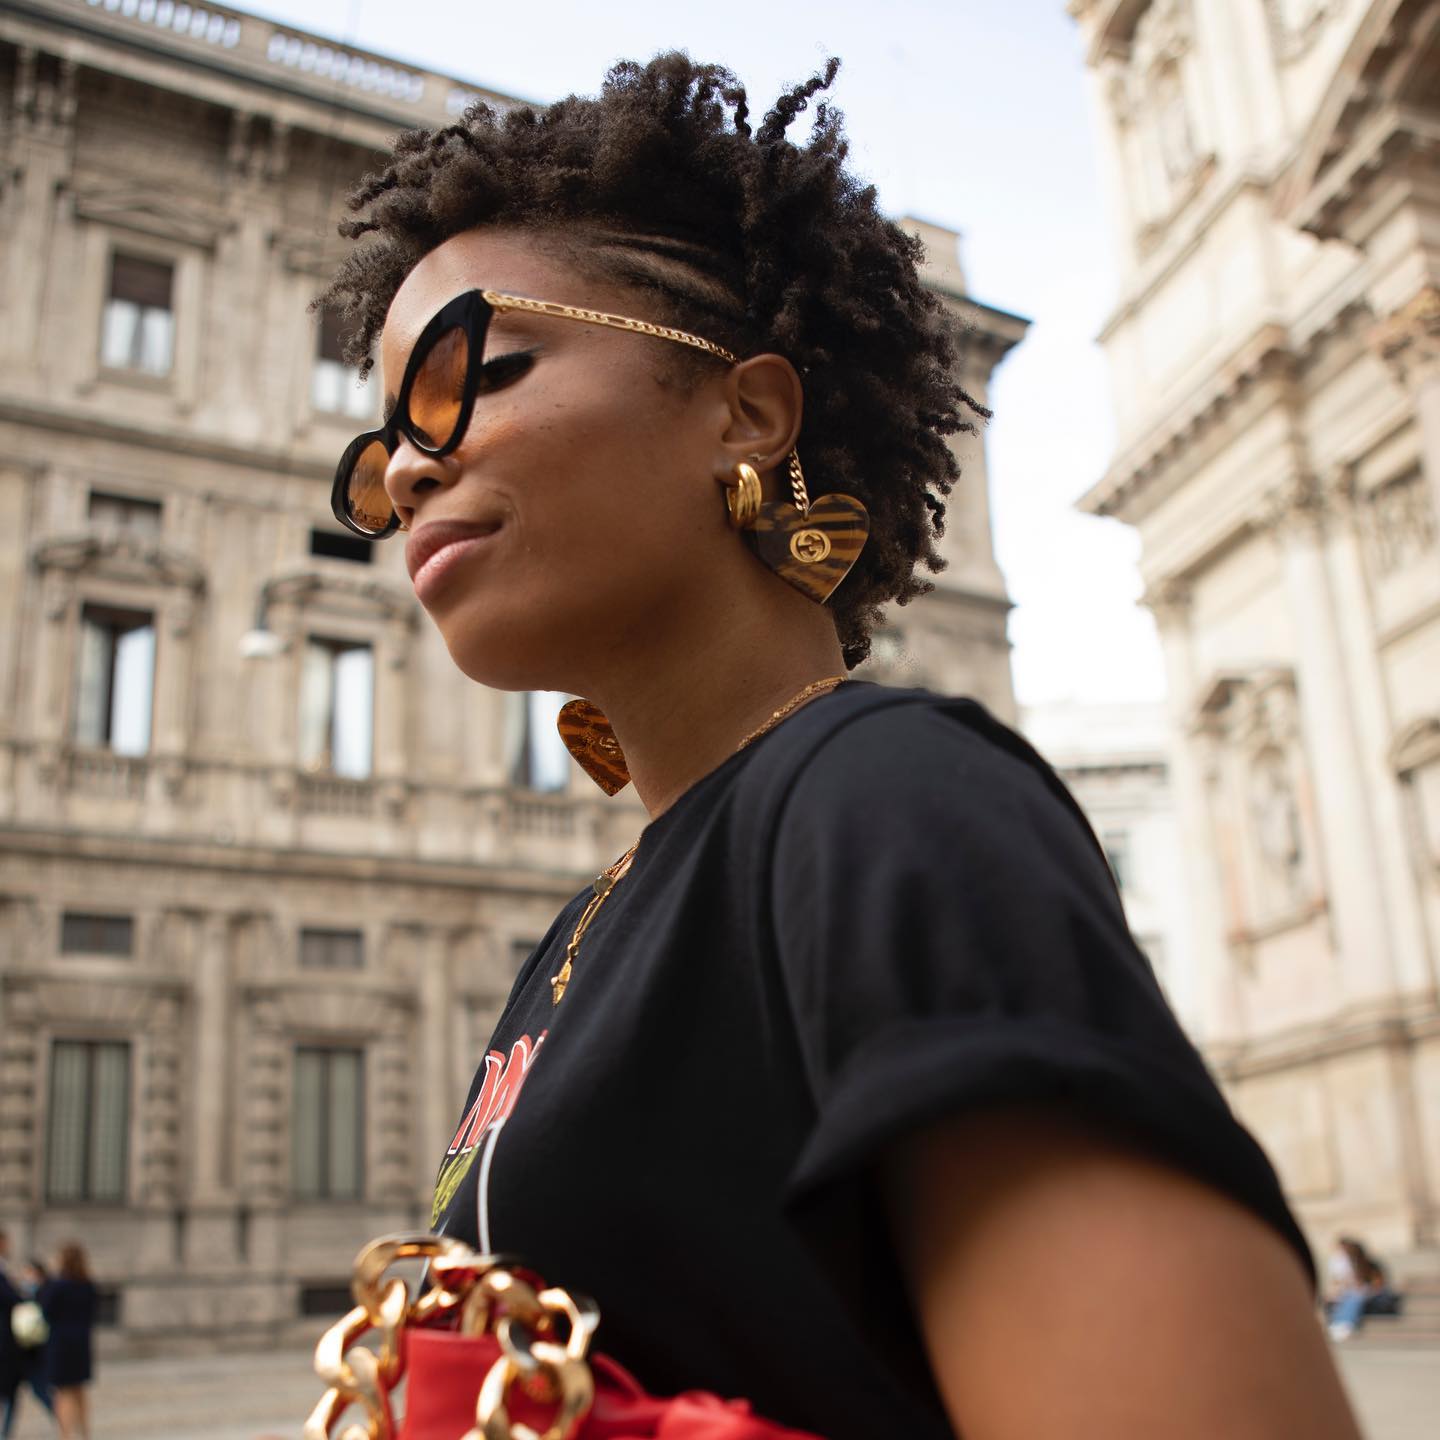 Designer Logo Earrings: @slipintostyle wears a pair of Gucci logo earrings